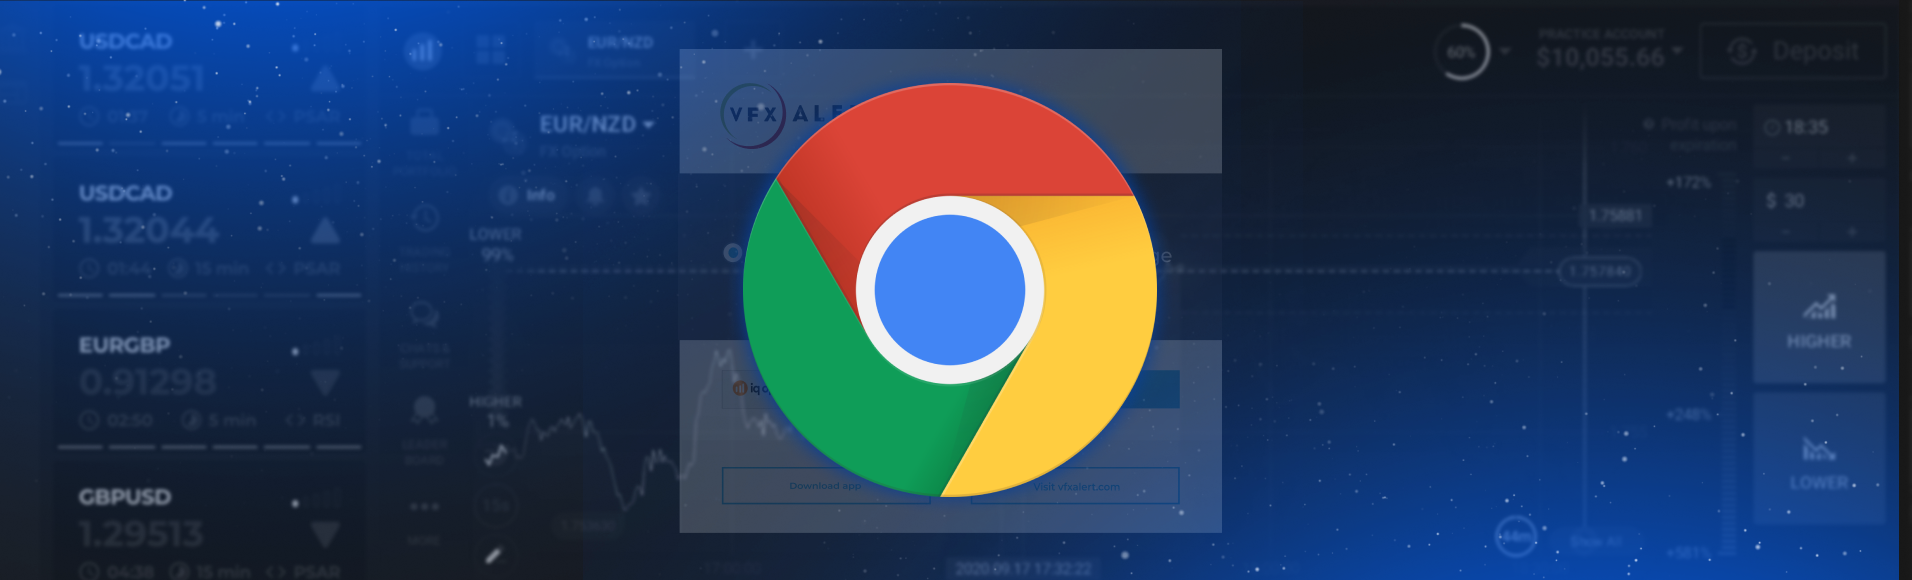 Signaux vfxAlert dans le navigateur Chrome